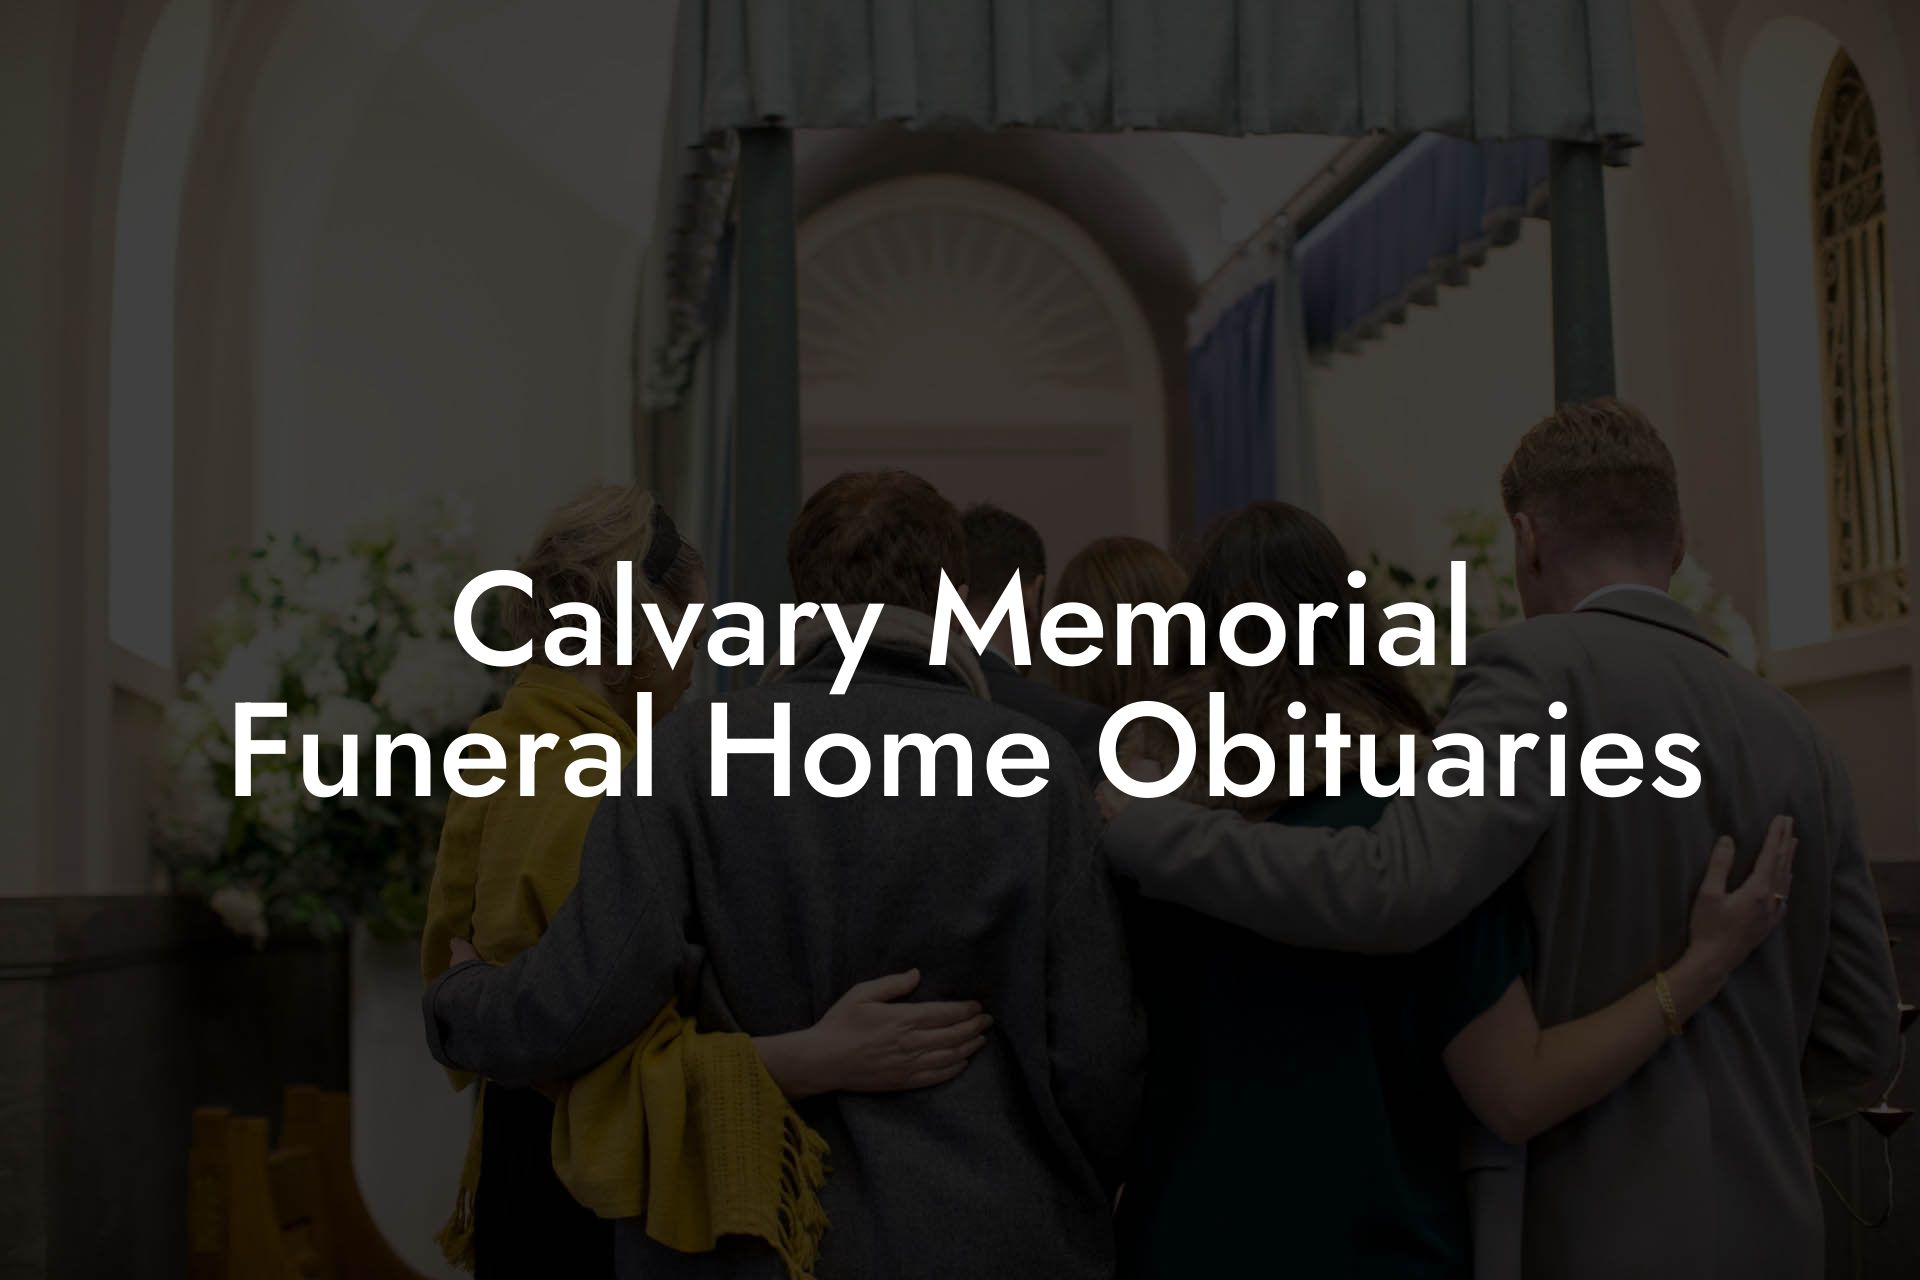 Calvary Memorial Funeral Home Obituaries